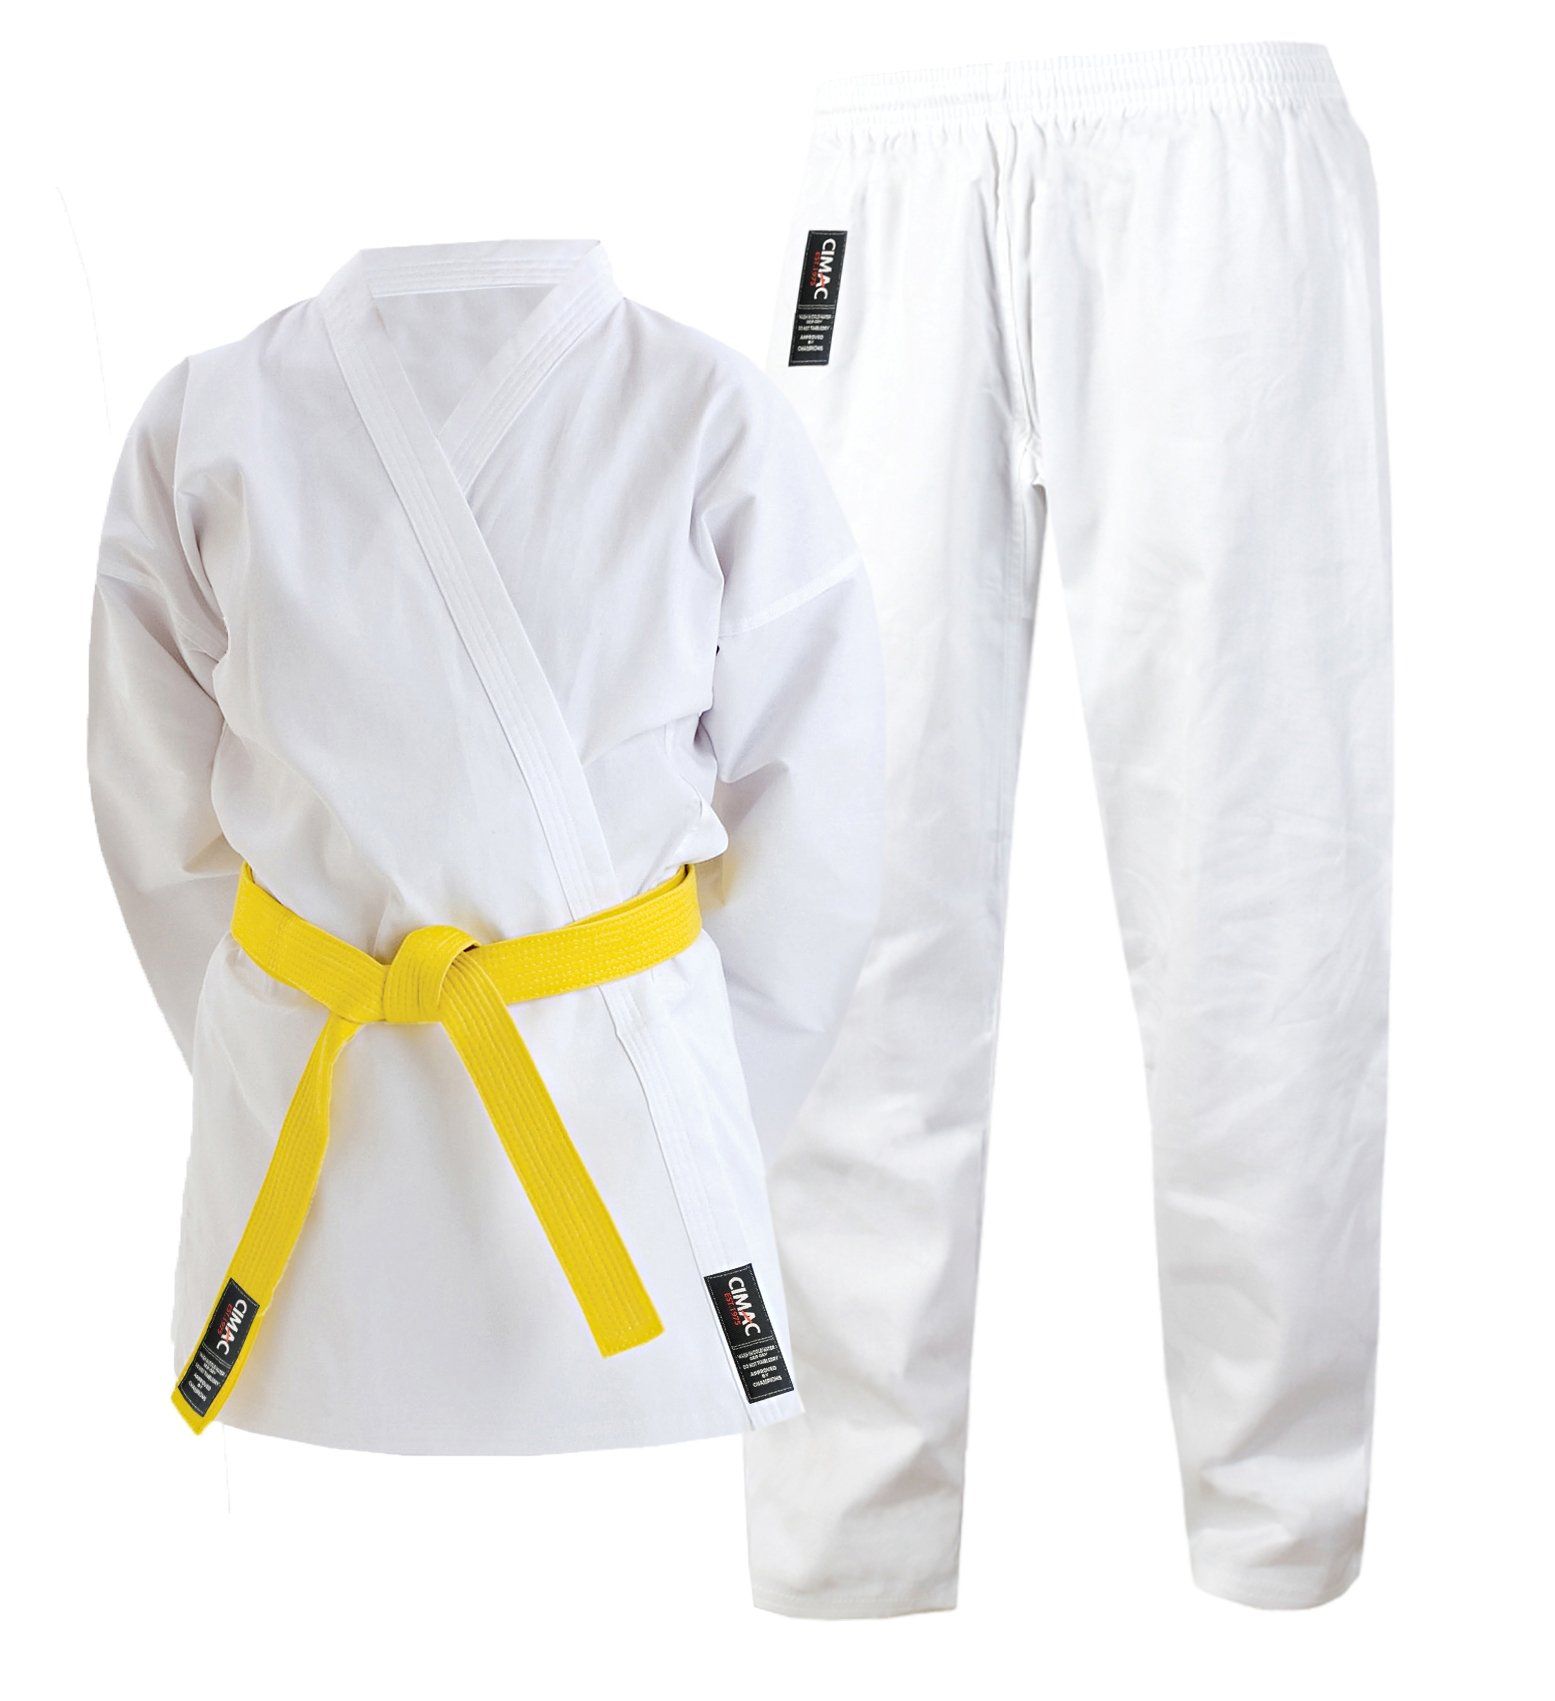 Cimac Karate Gi Adult Kids Men Women Suit White Martial Arts Uniform 14oz Japanese Cut 